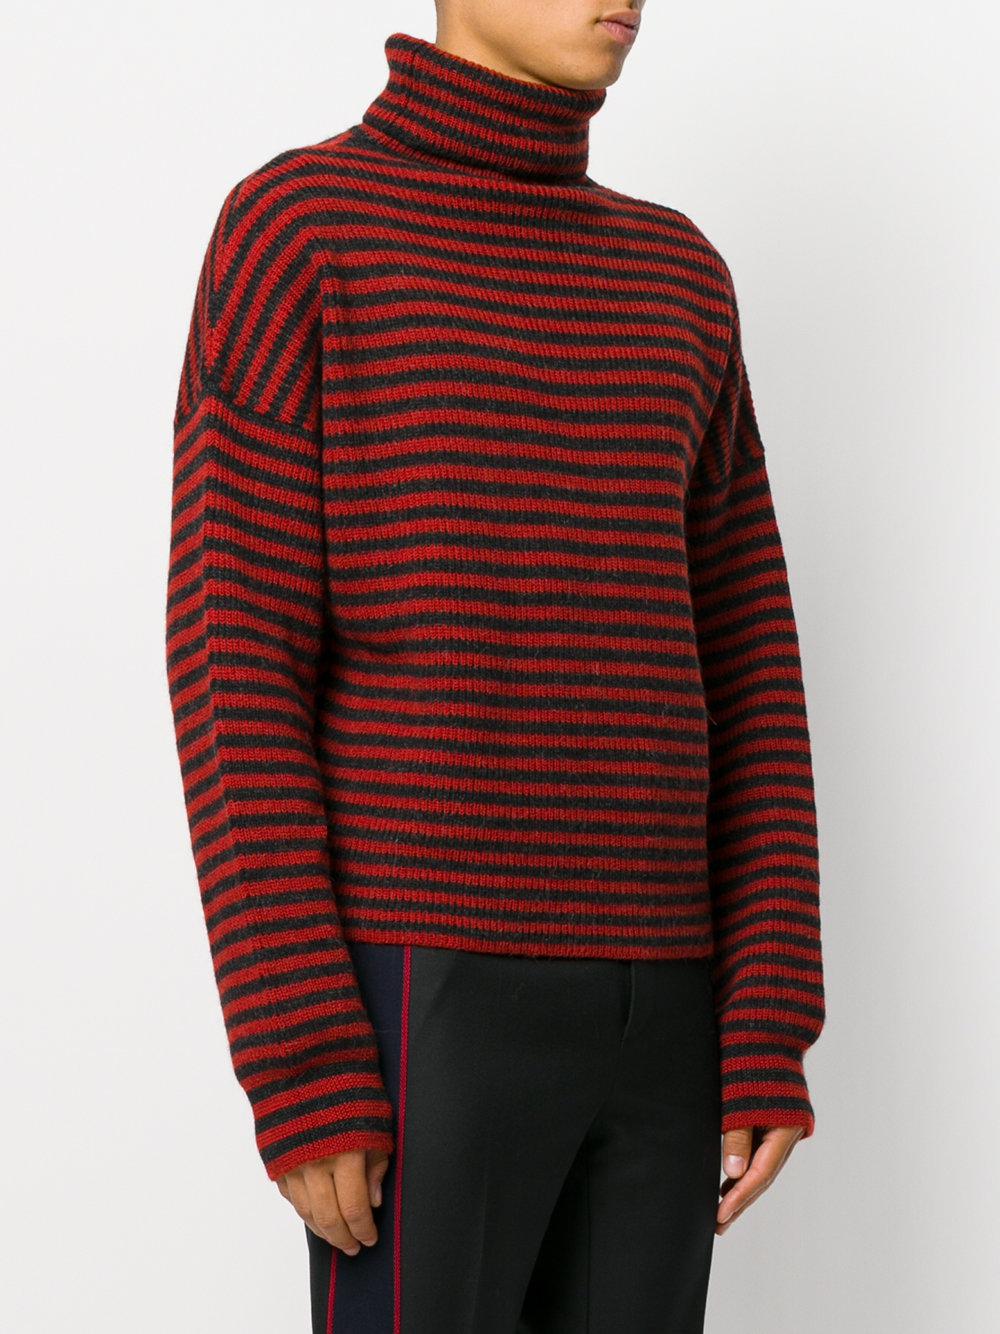 Lanvin Wool Turtleneck Sweater in Red for Men - Lyst